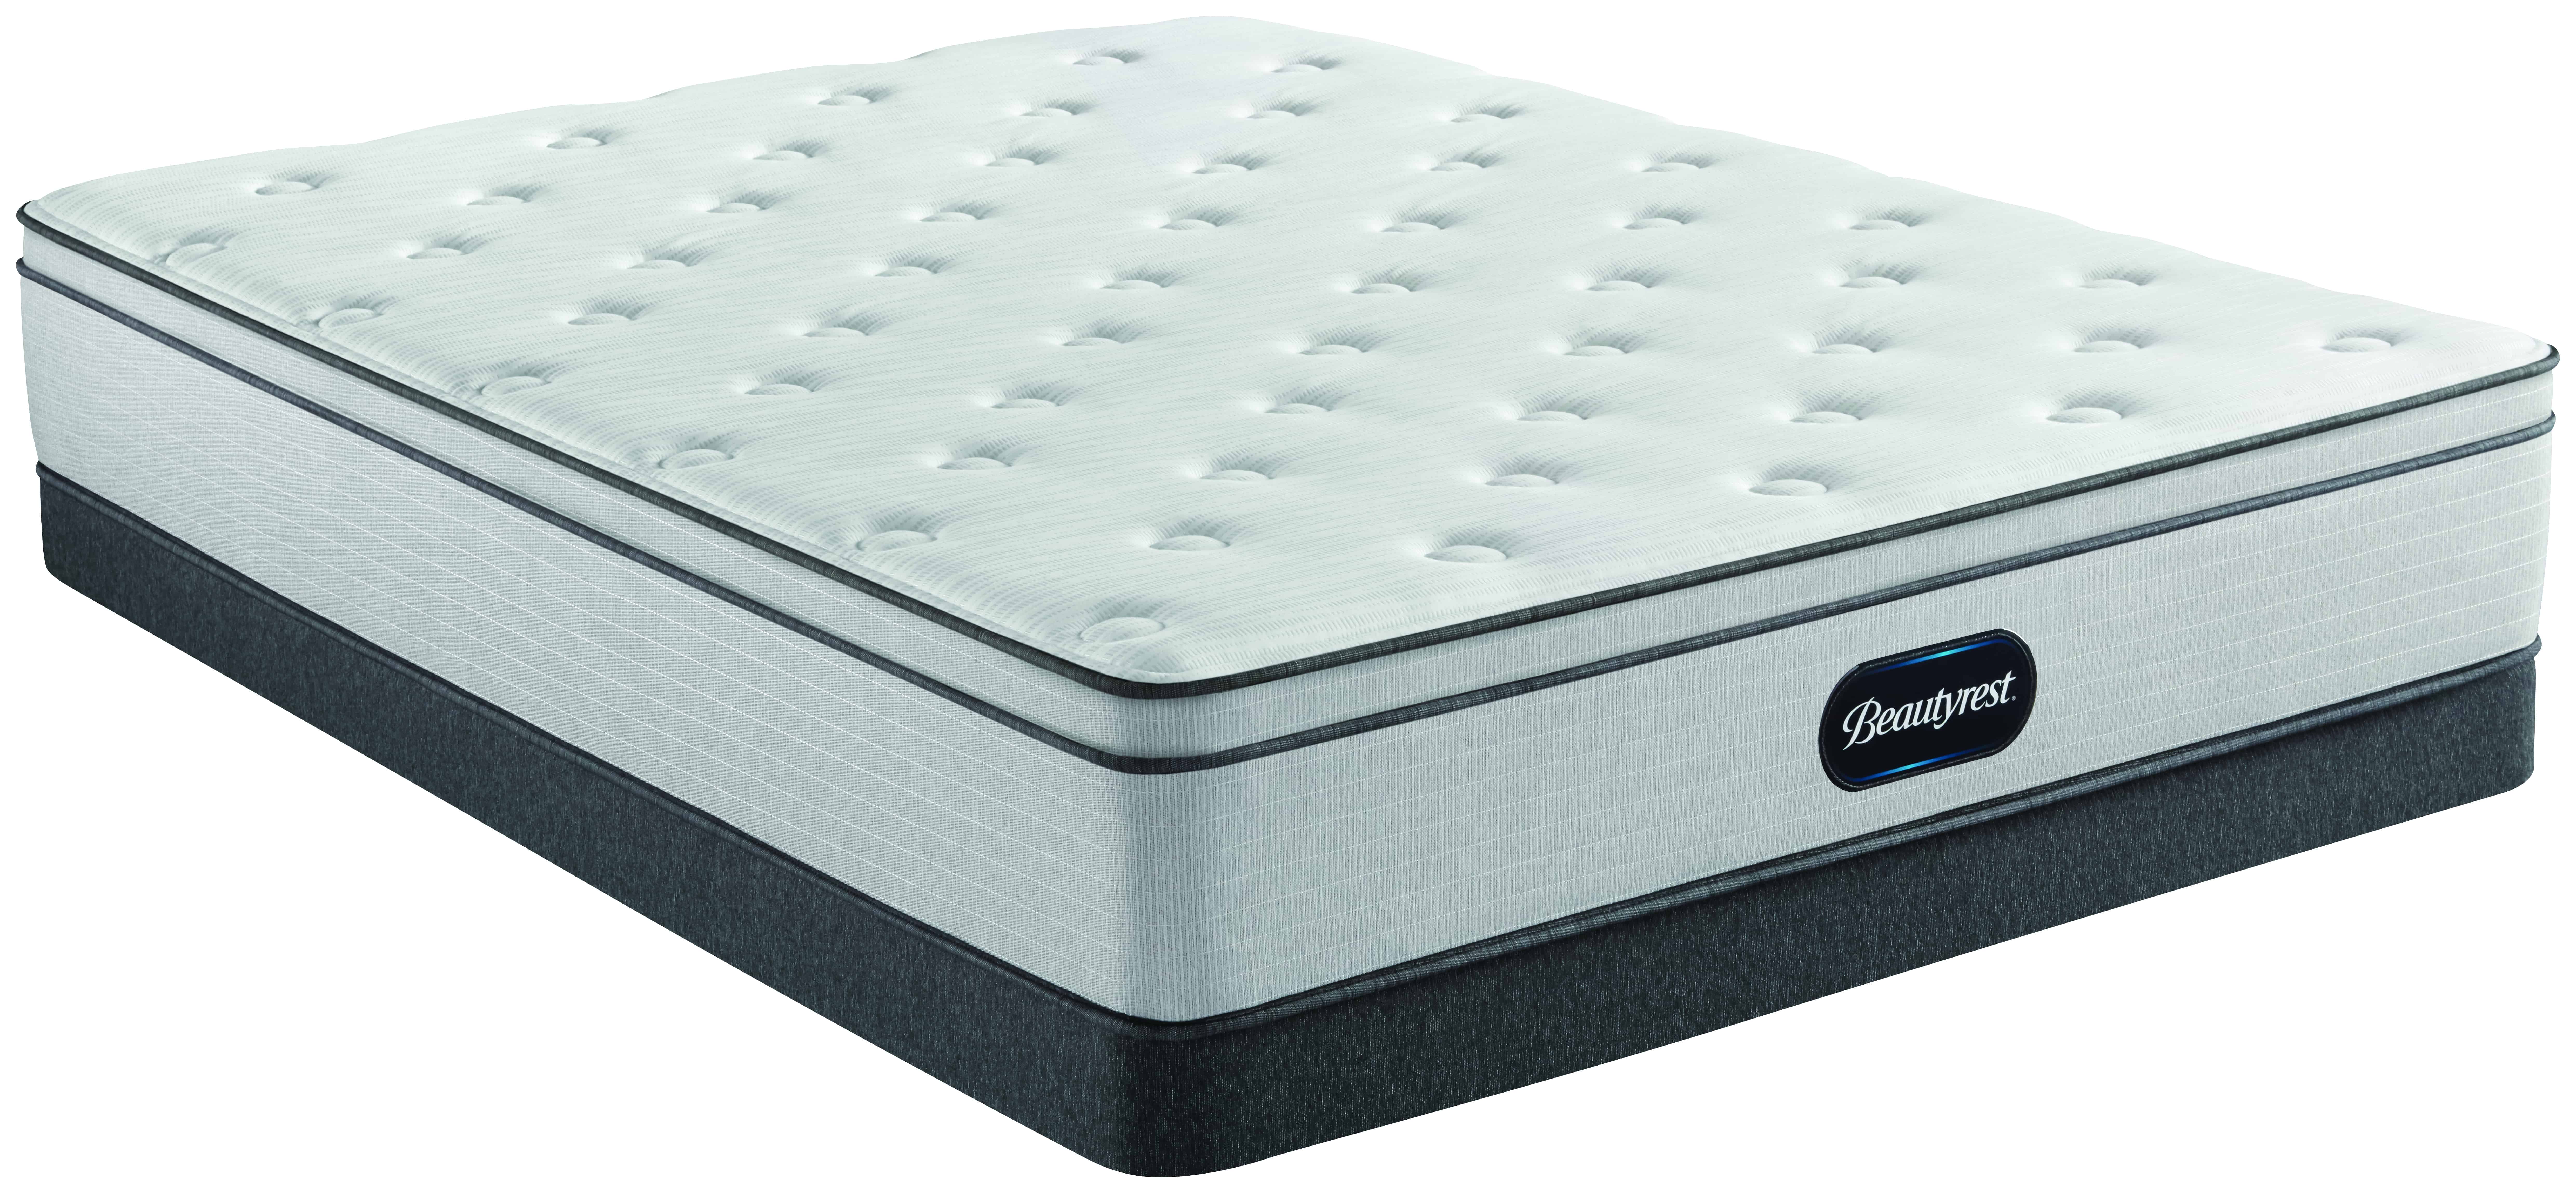 beautyrest recharge 800 plush queen mattress